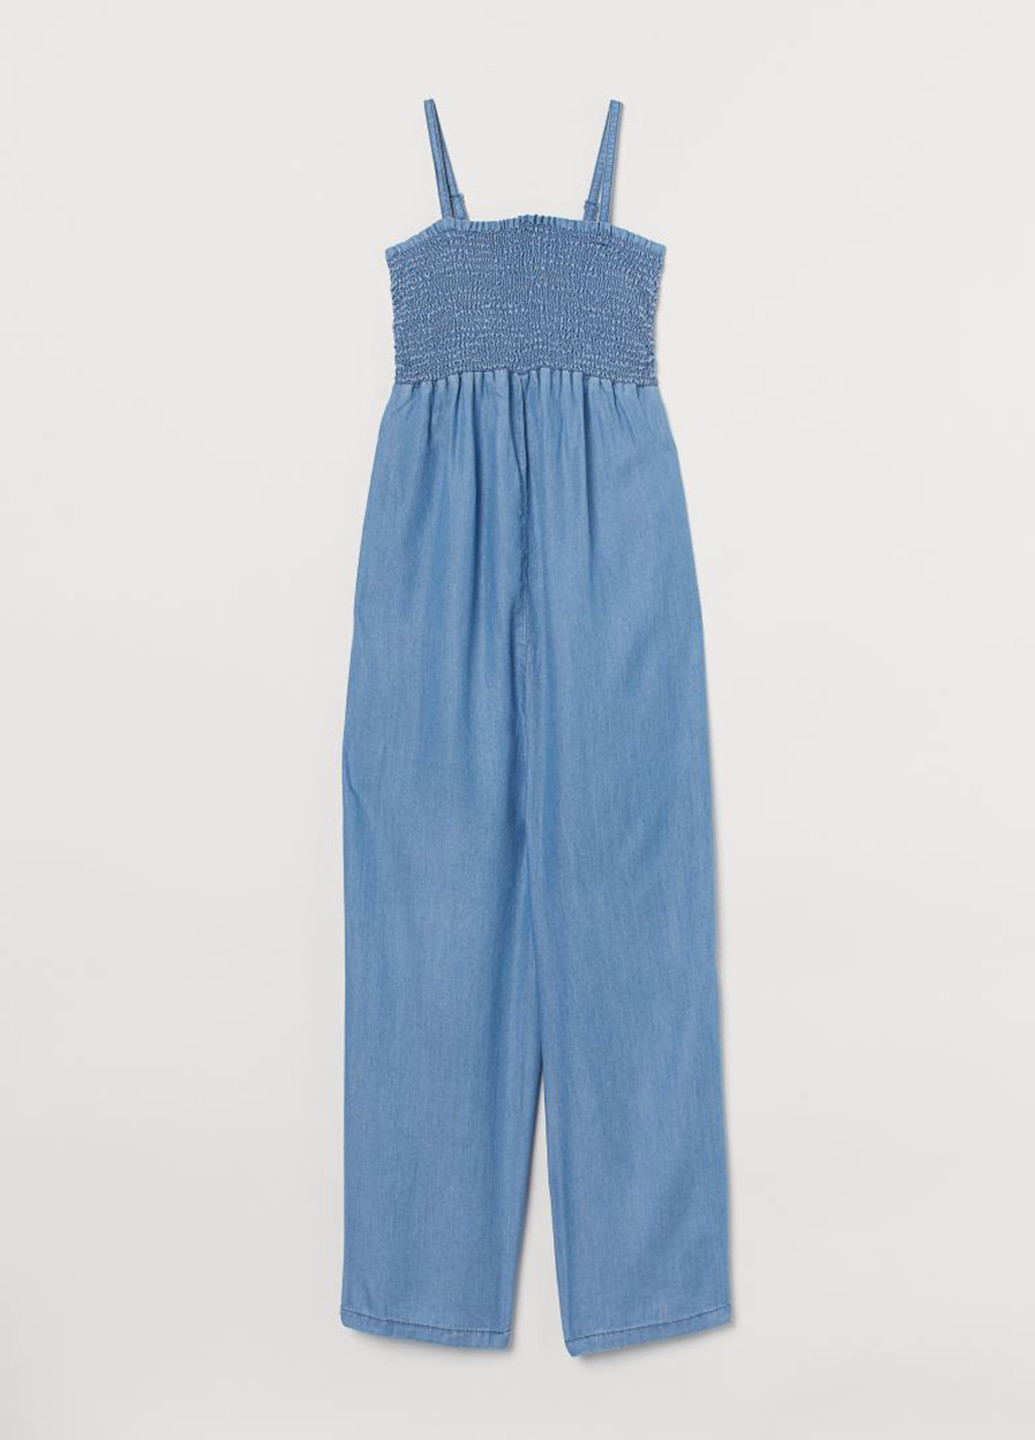 Комбинезон для беременных H&M комбинезон-брюки однотонный светло-синий денил лиоцелл